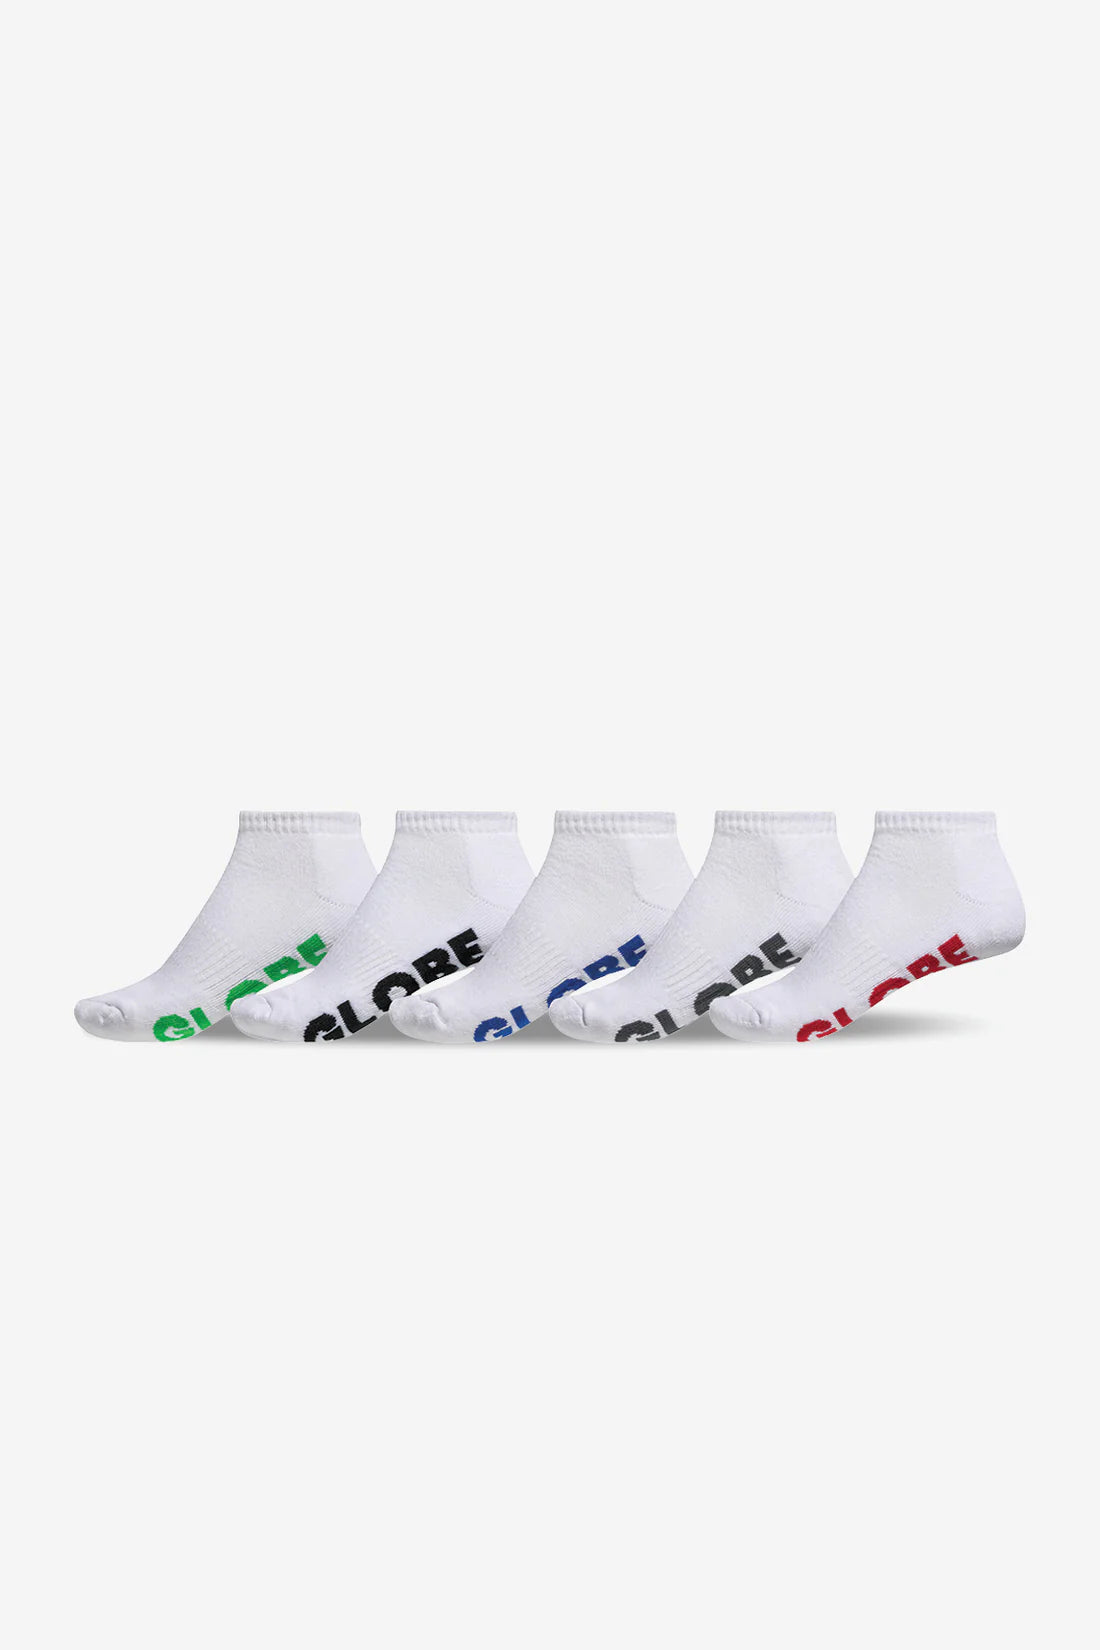 GLOBE Stealth Ankle Mens 5pk Socks - White